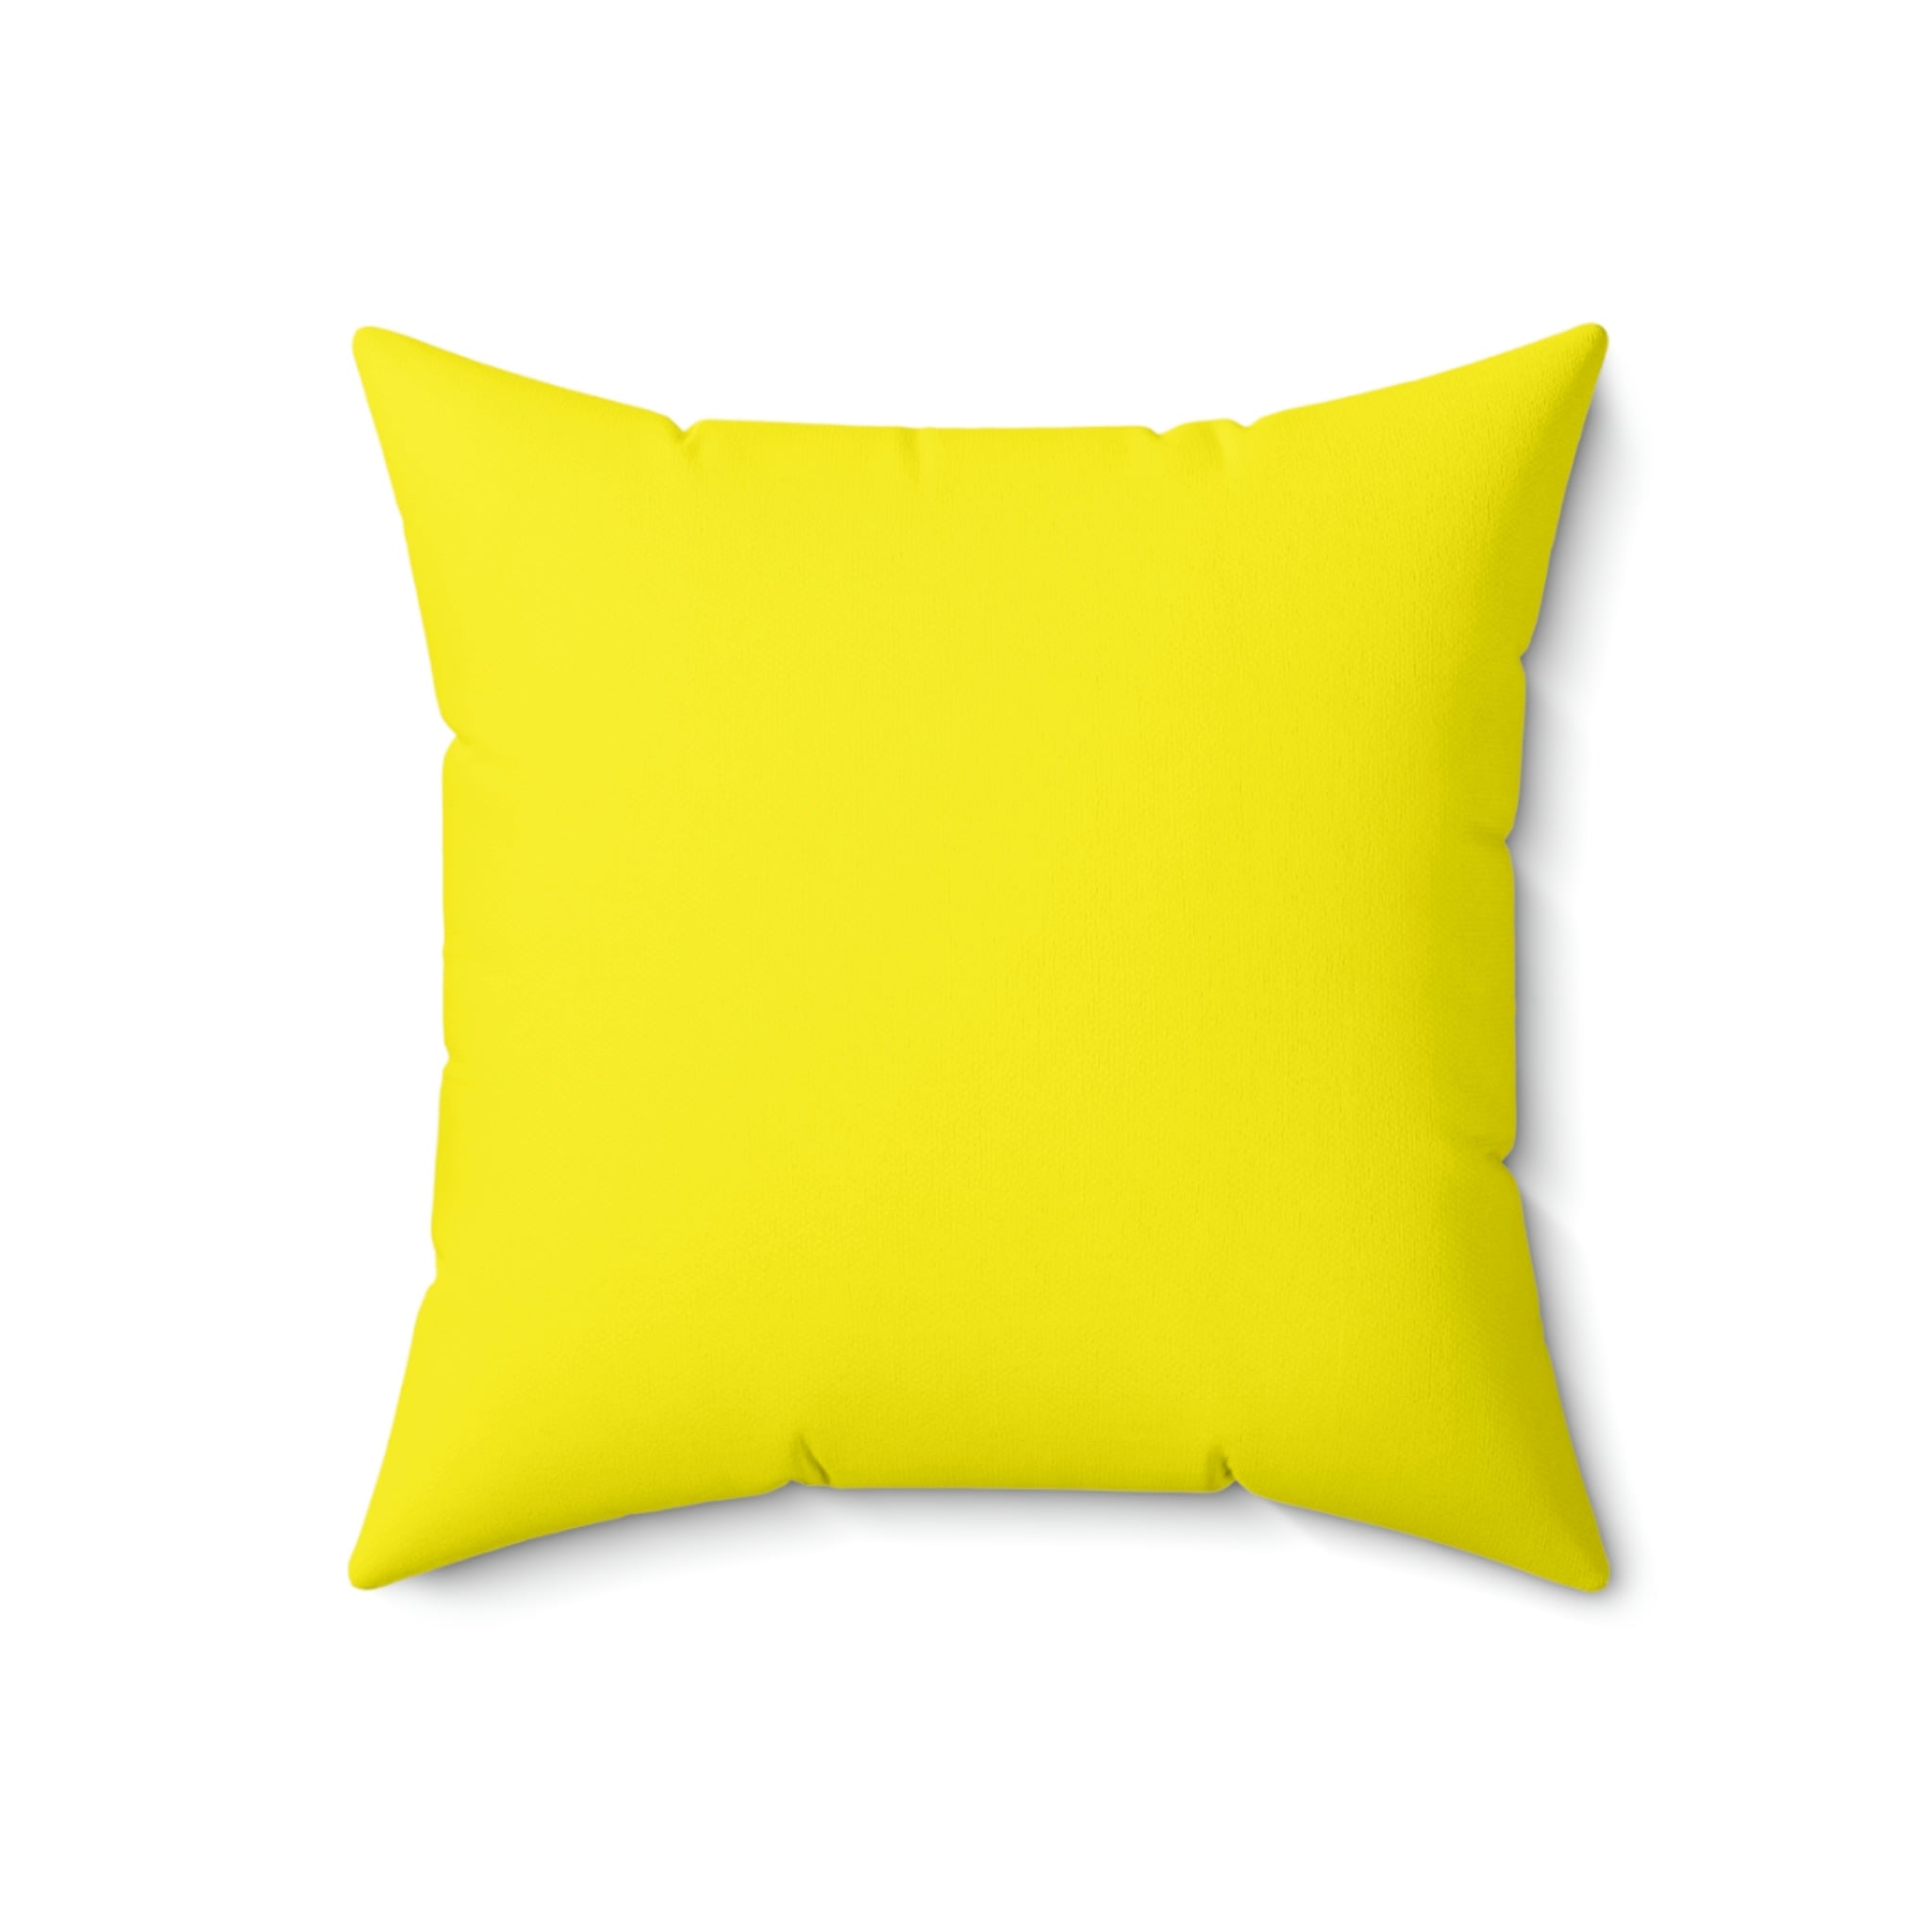 Spun Polyester Pillow Happy Face yellow pattern m